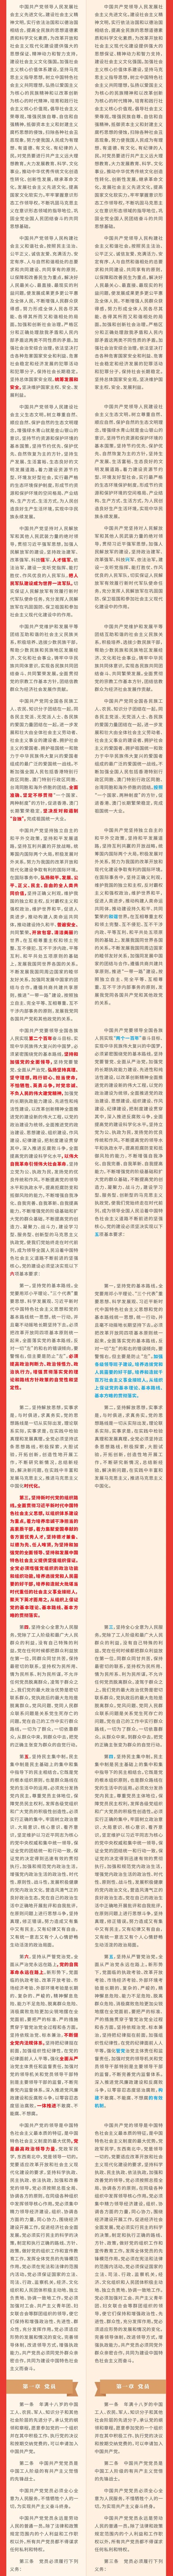 《中国共产党章程》修改对比一览表(图2)